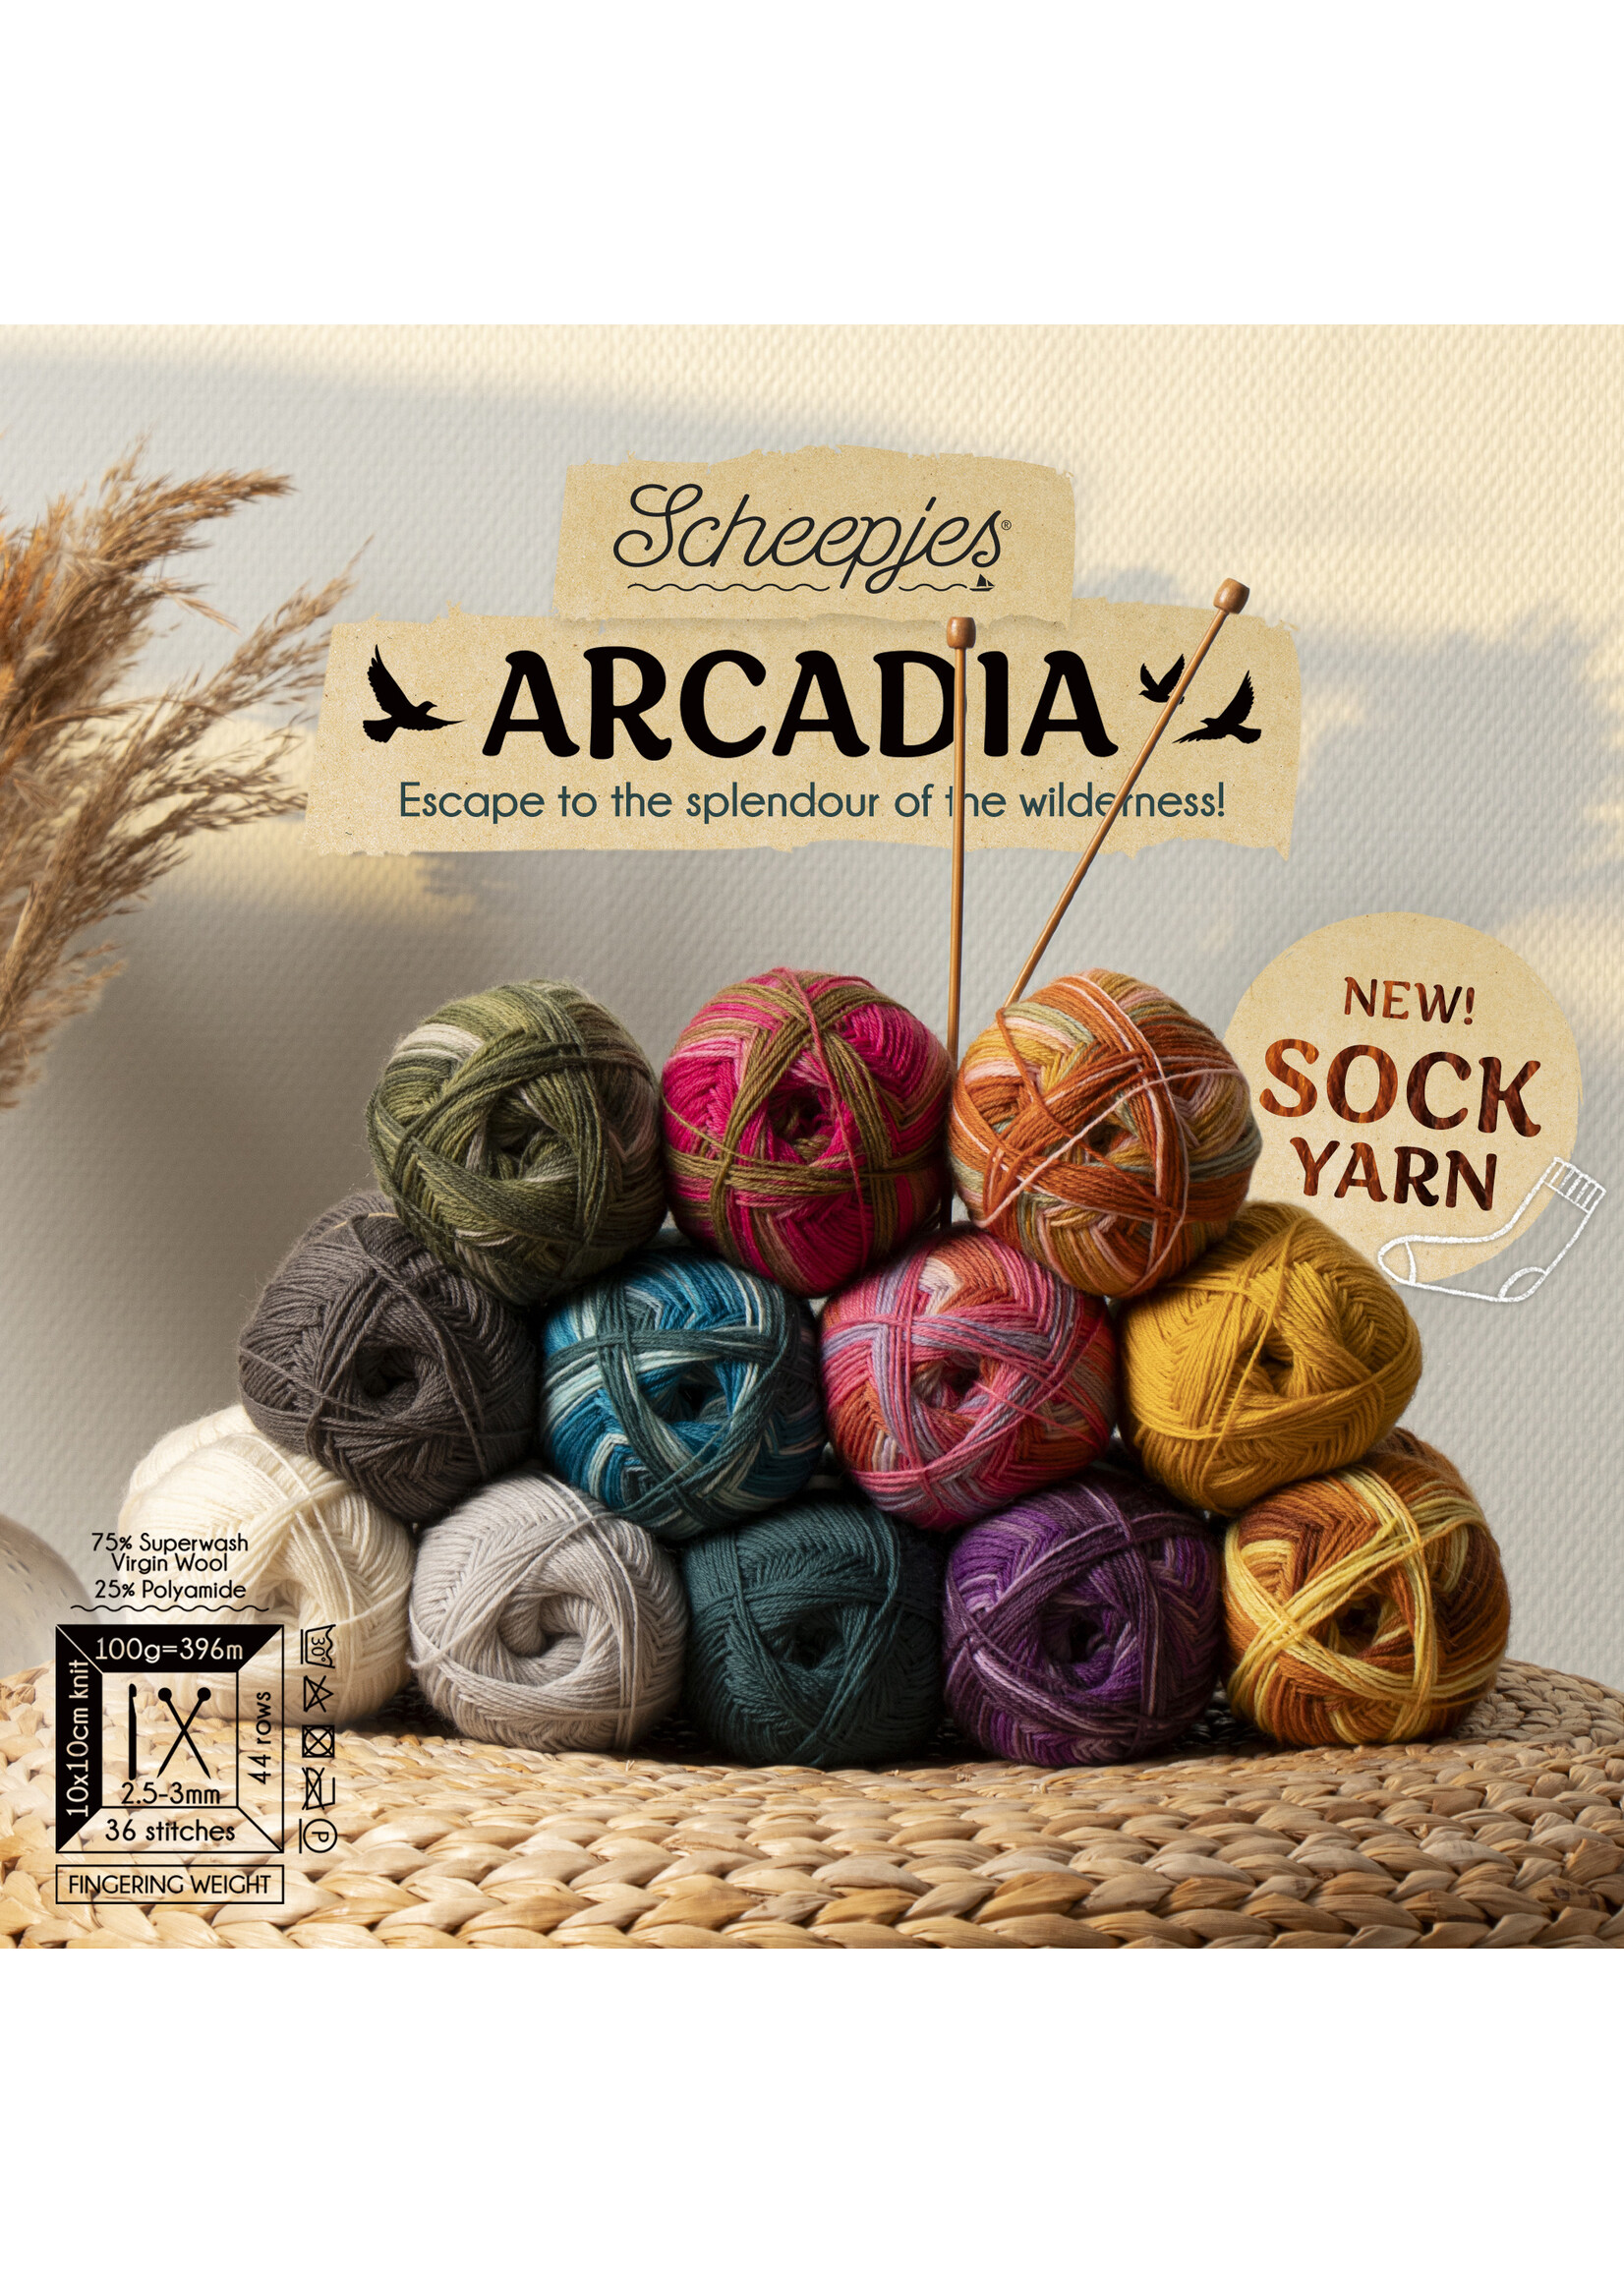 Scheepjes Arcadia 100g - 901 Erica